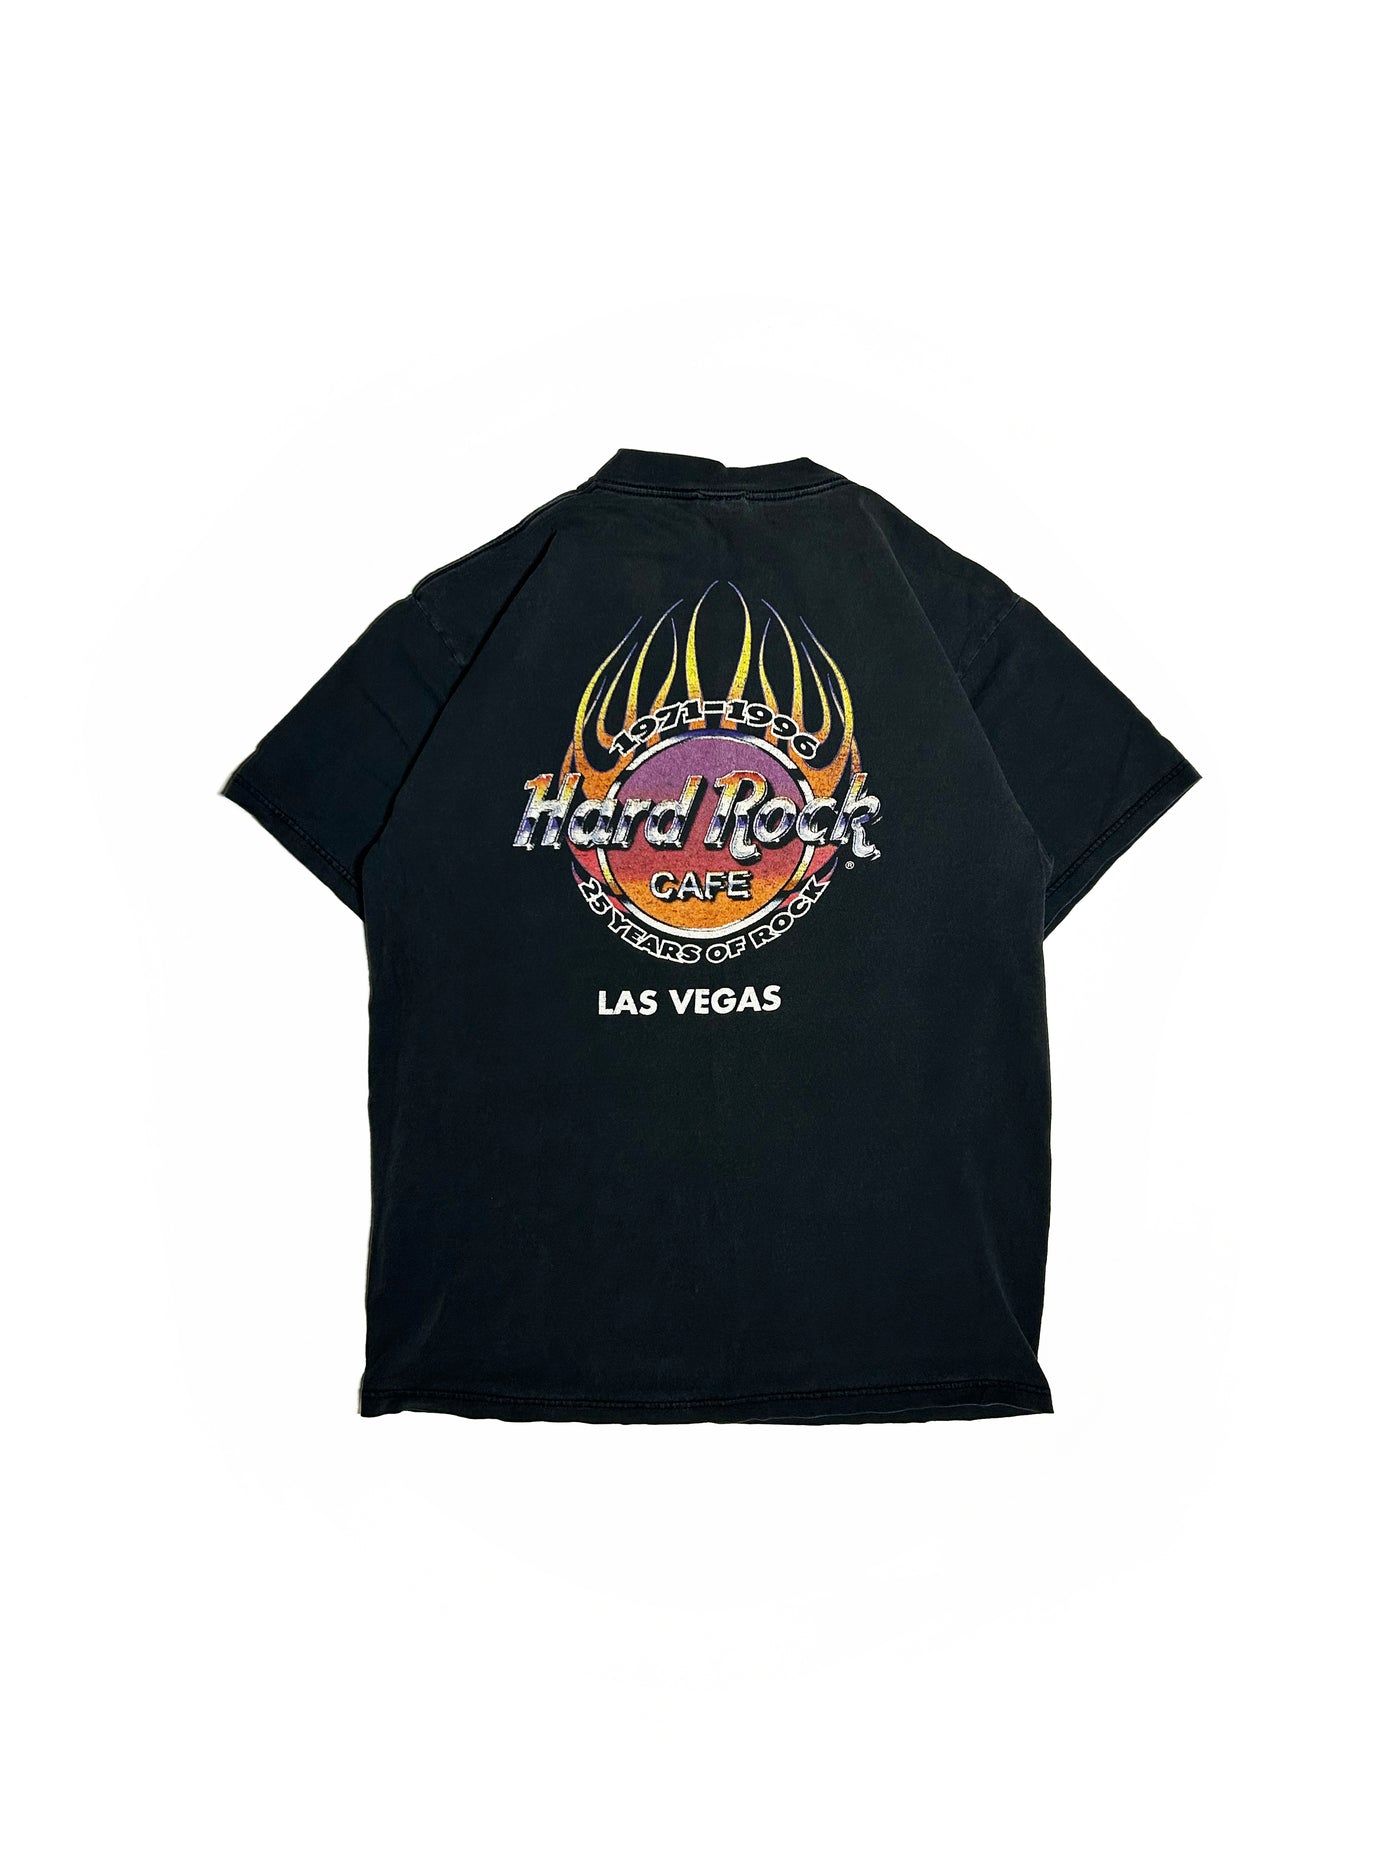 Vintage 1996 Hard Rock Cafe Las Vegas T-Shirt